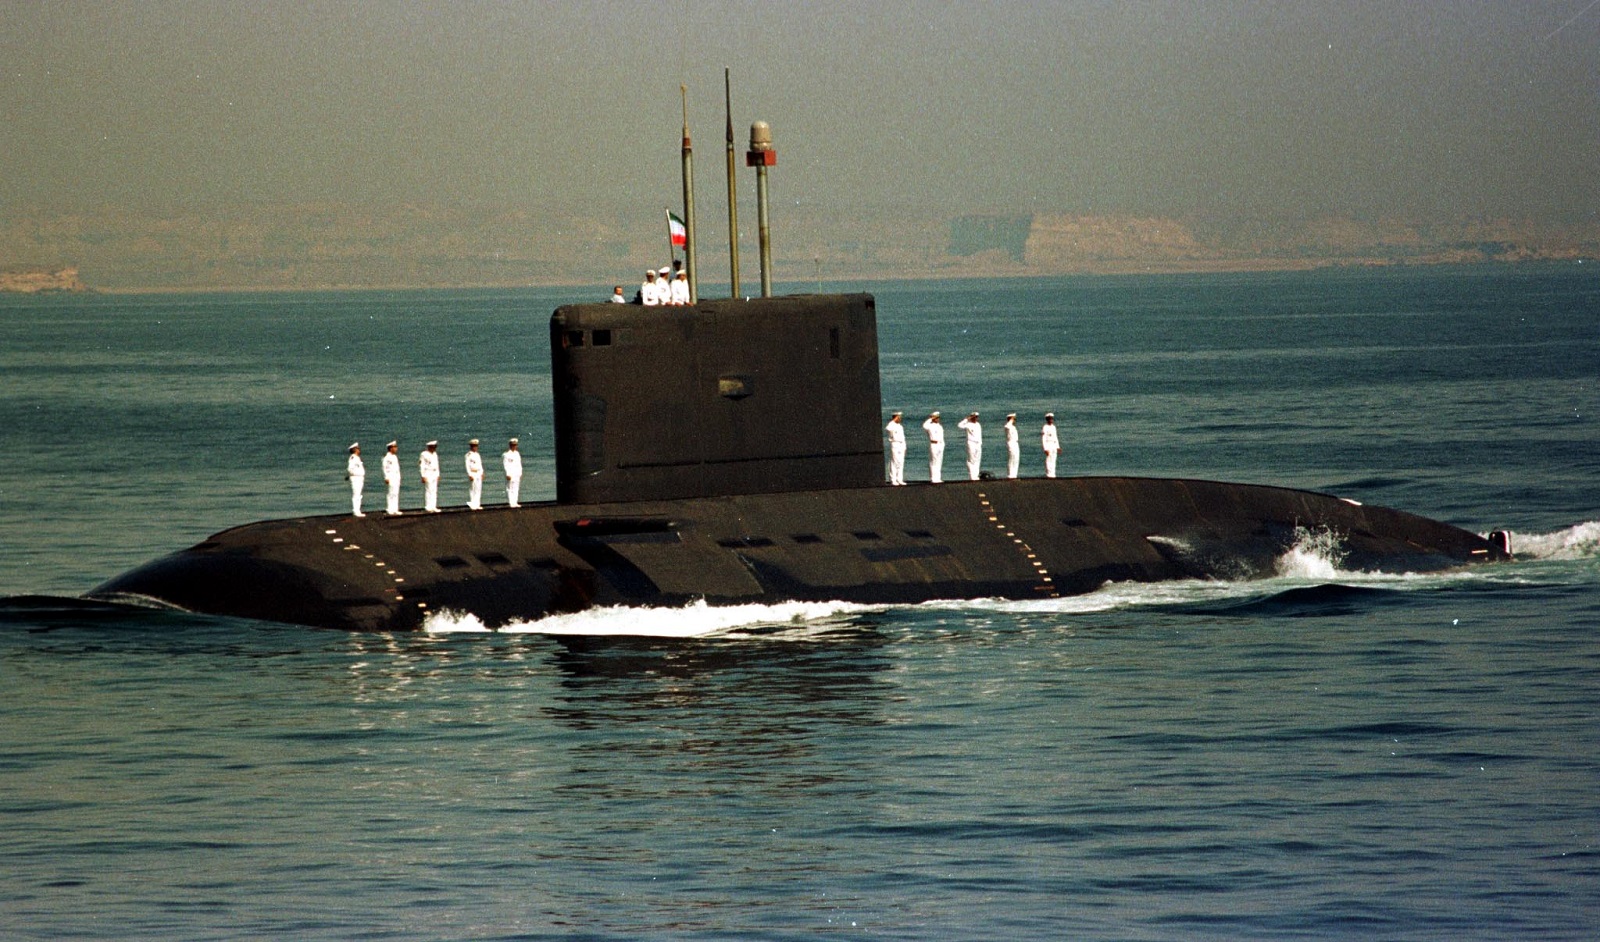 История пл. Подводная лодка 877экм. Подводная лодка kilo class Submarine. ДЭПЛ пр. 877. Сверхмалые подводные лодки Ирана.